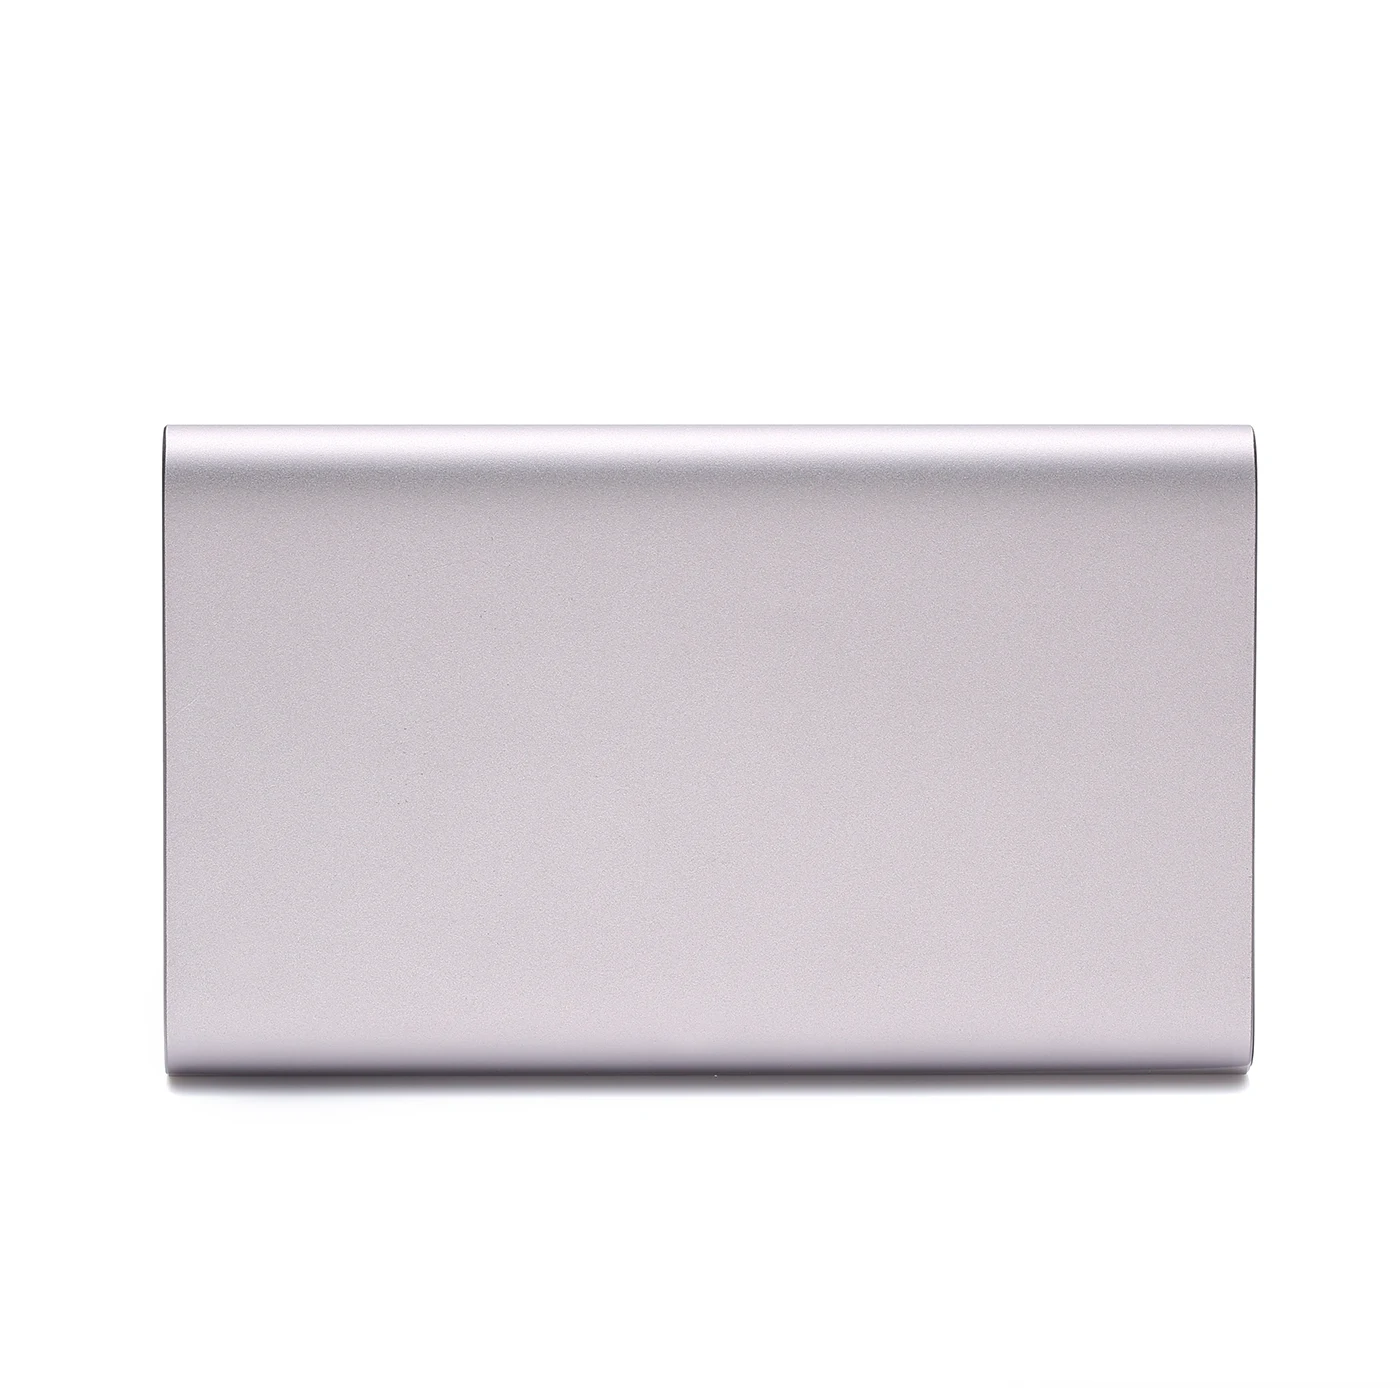 BYCOBECY кошелек для мужчин и женщин простой металлический бизнес-держатель для карт креативный кошелек для карт женский серебристый серый короткий кошелек